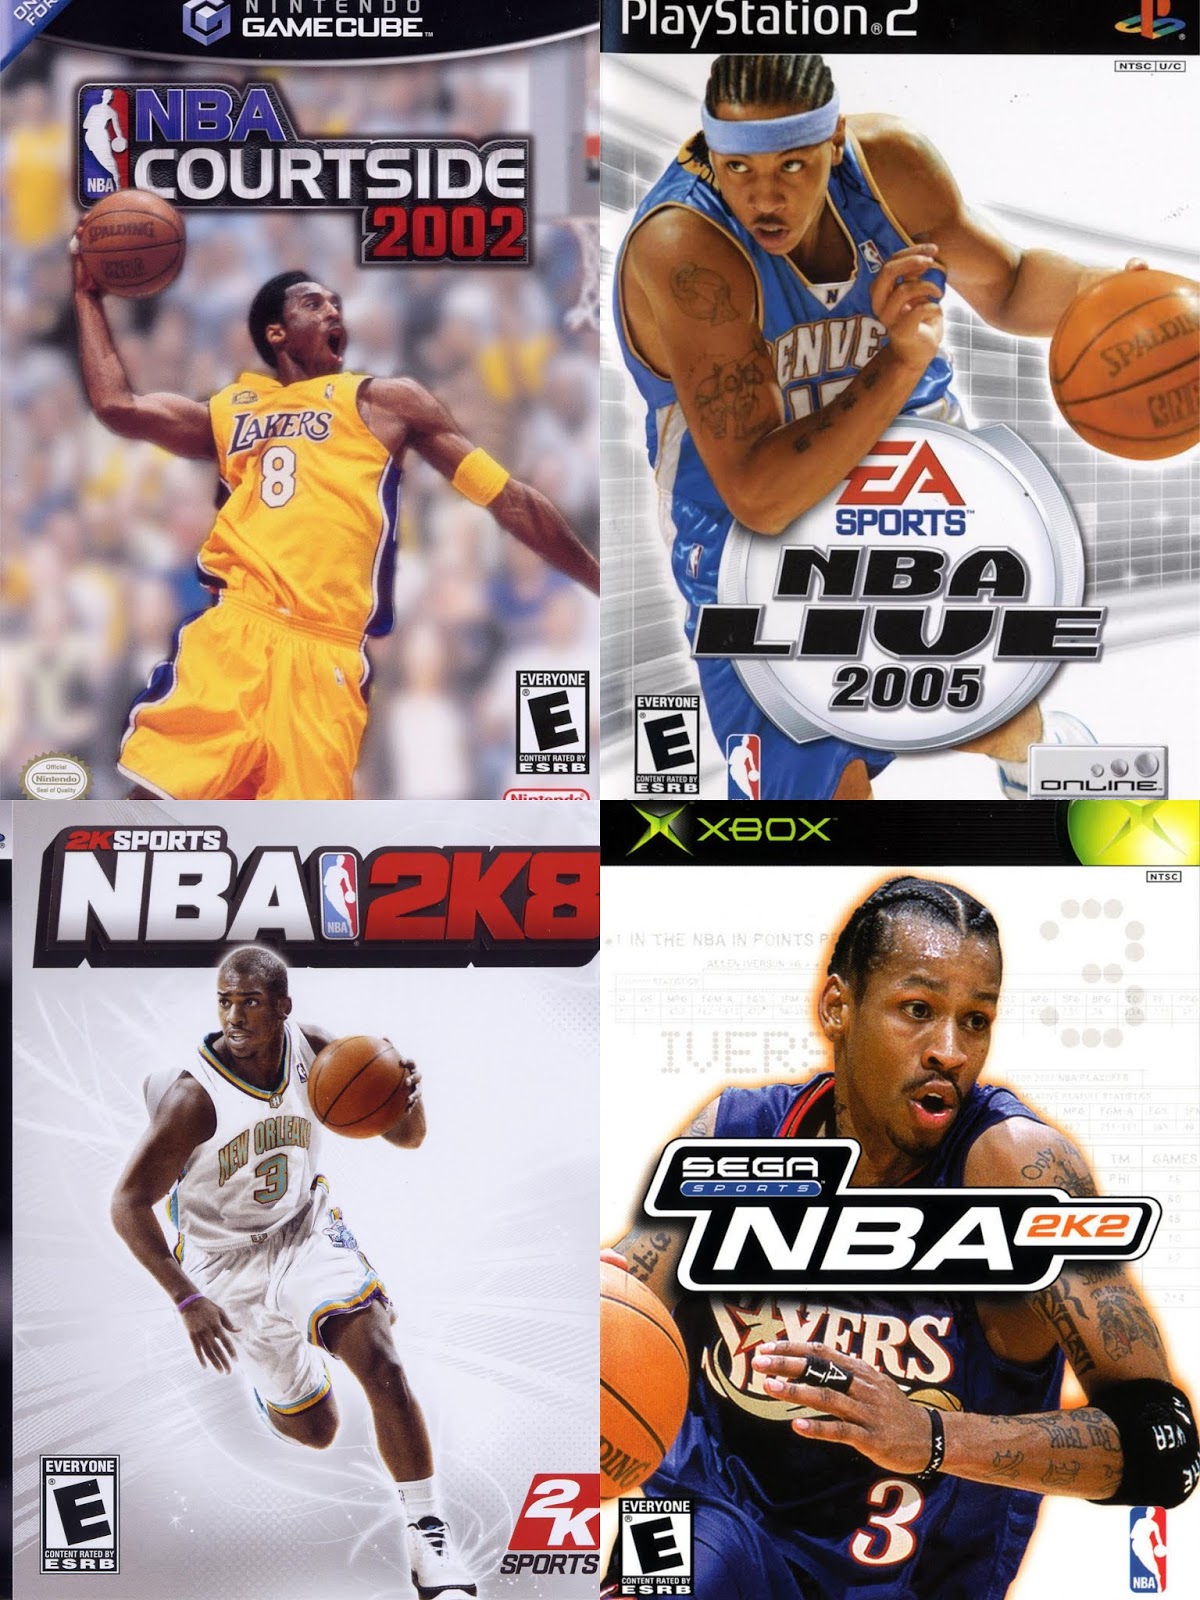 Nba Basketball Cartoon Porn - DAR Games: 7 NBA Basketball Games Of The 2000s